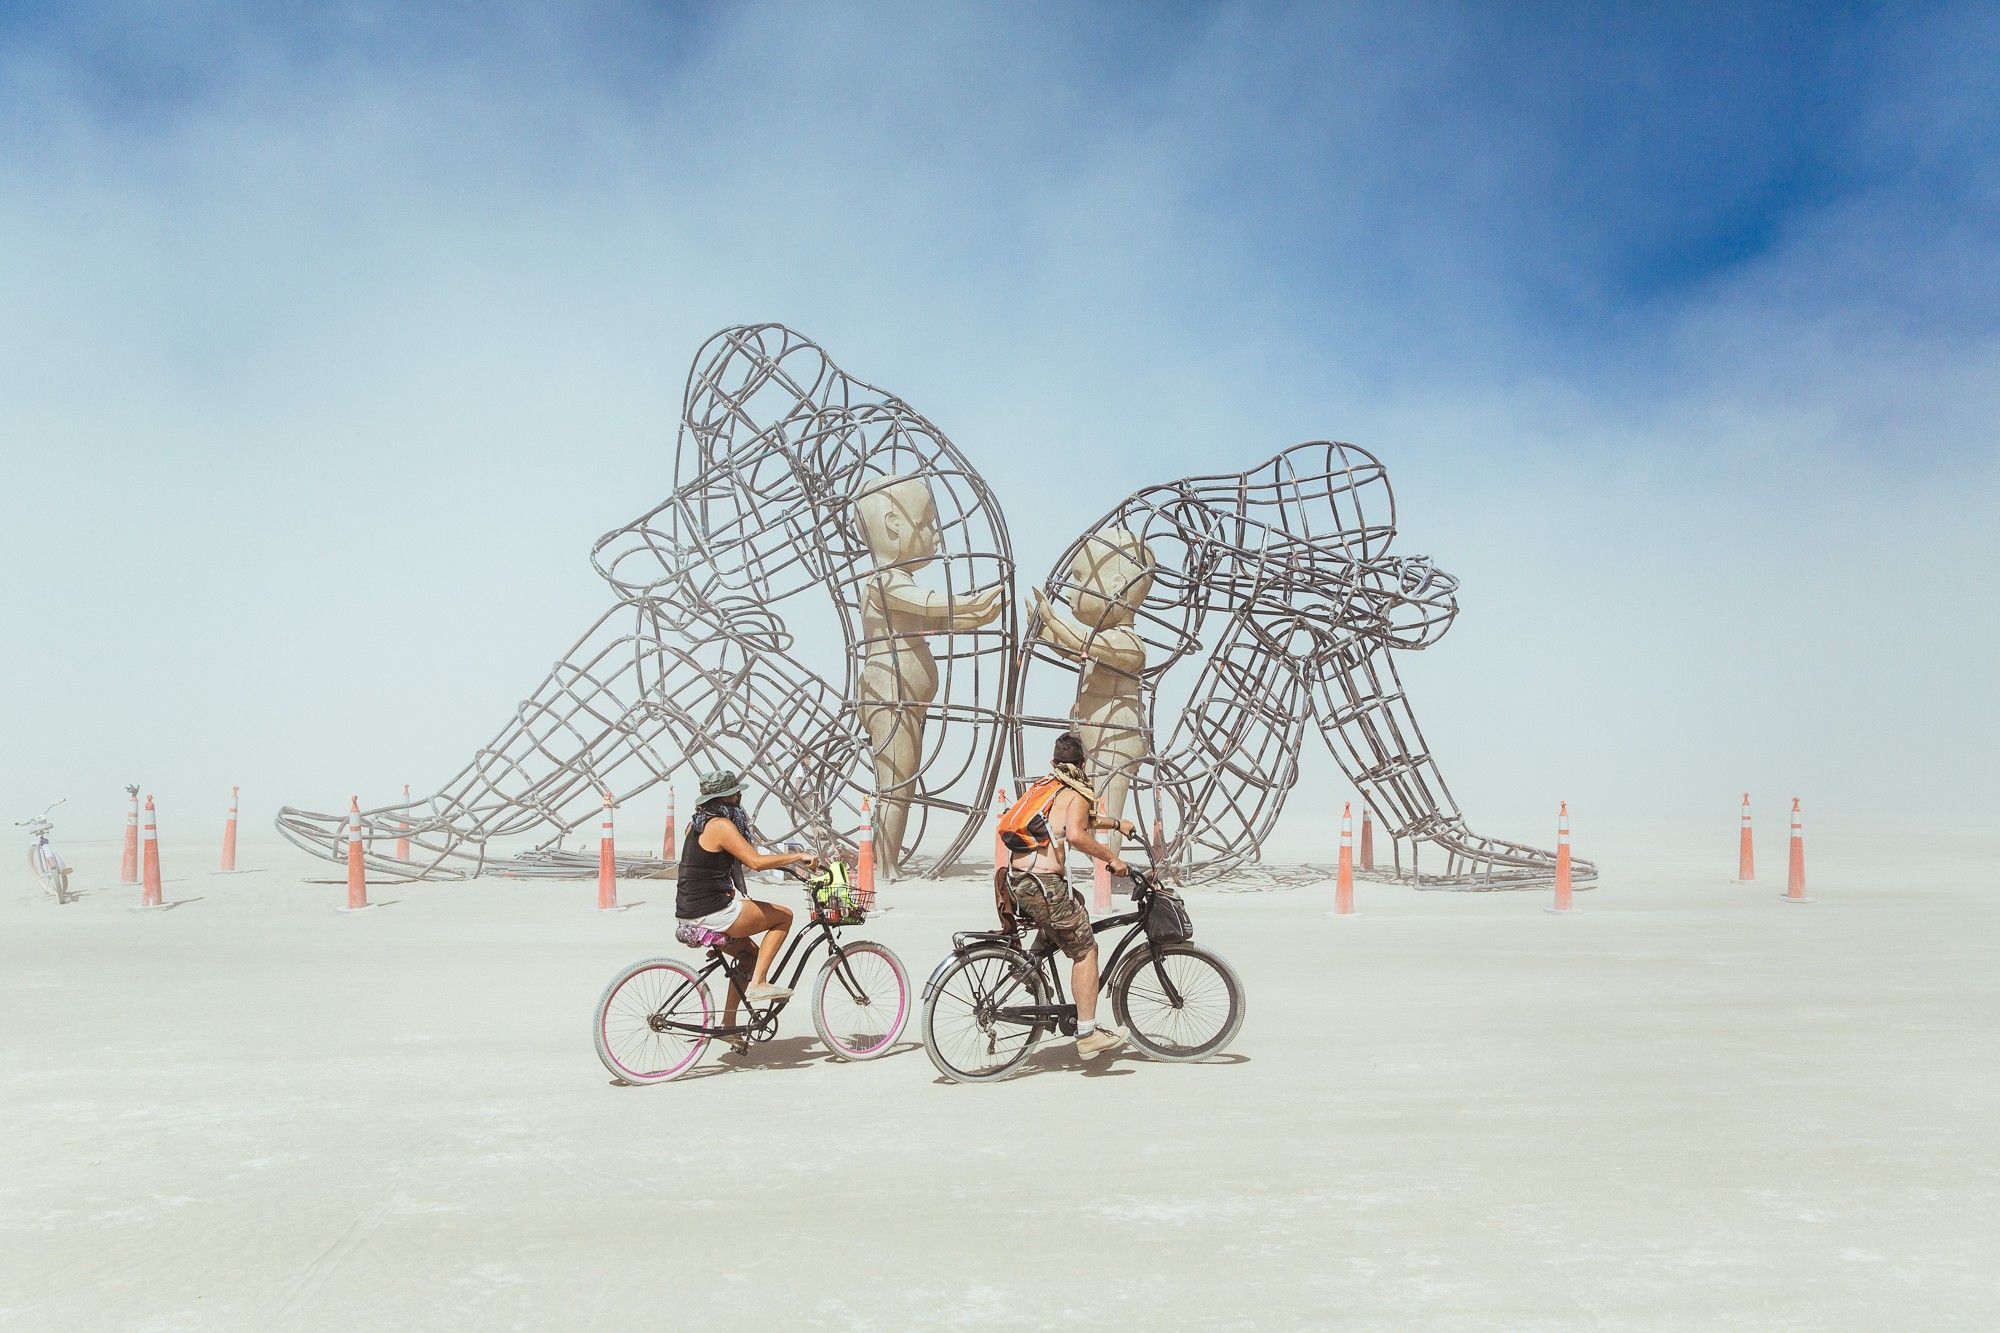 Burning Man Wallpapers.